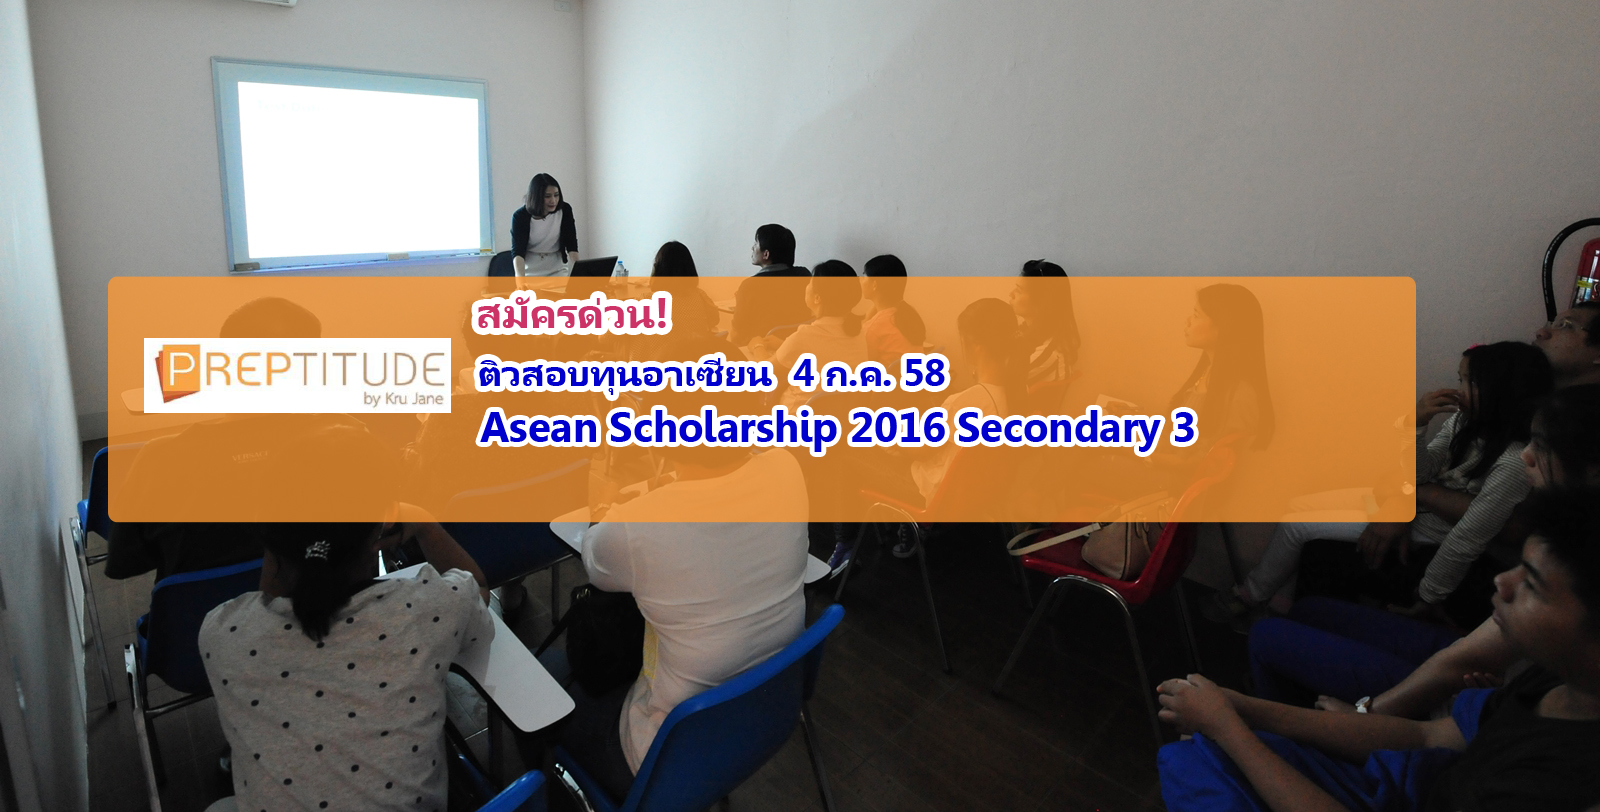 สมัครด่วน ติวสอบทุนอาเซียน ASEAN Scholarships เสาร์ 4 ก.ค. 58